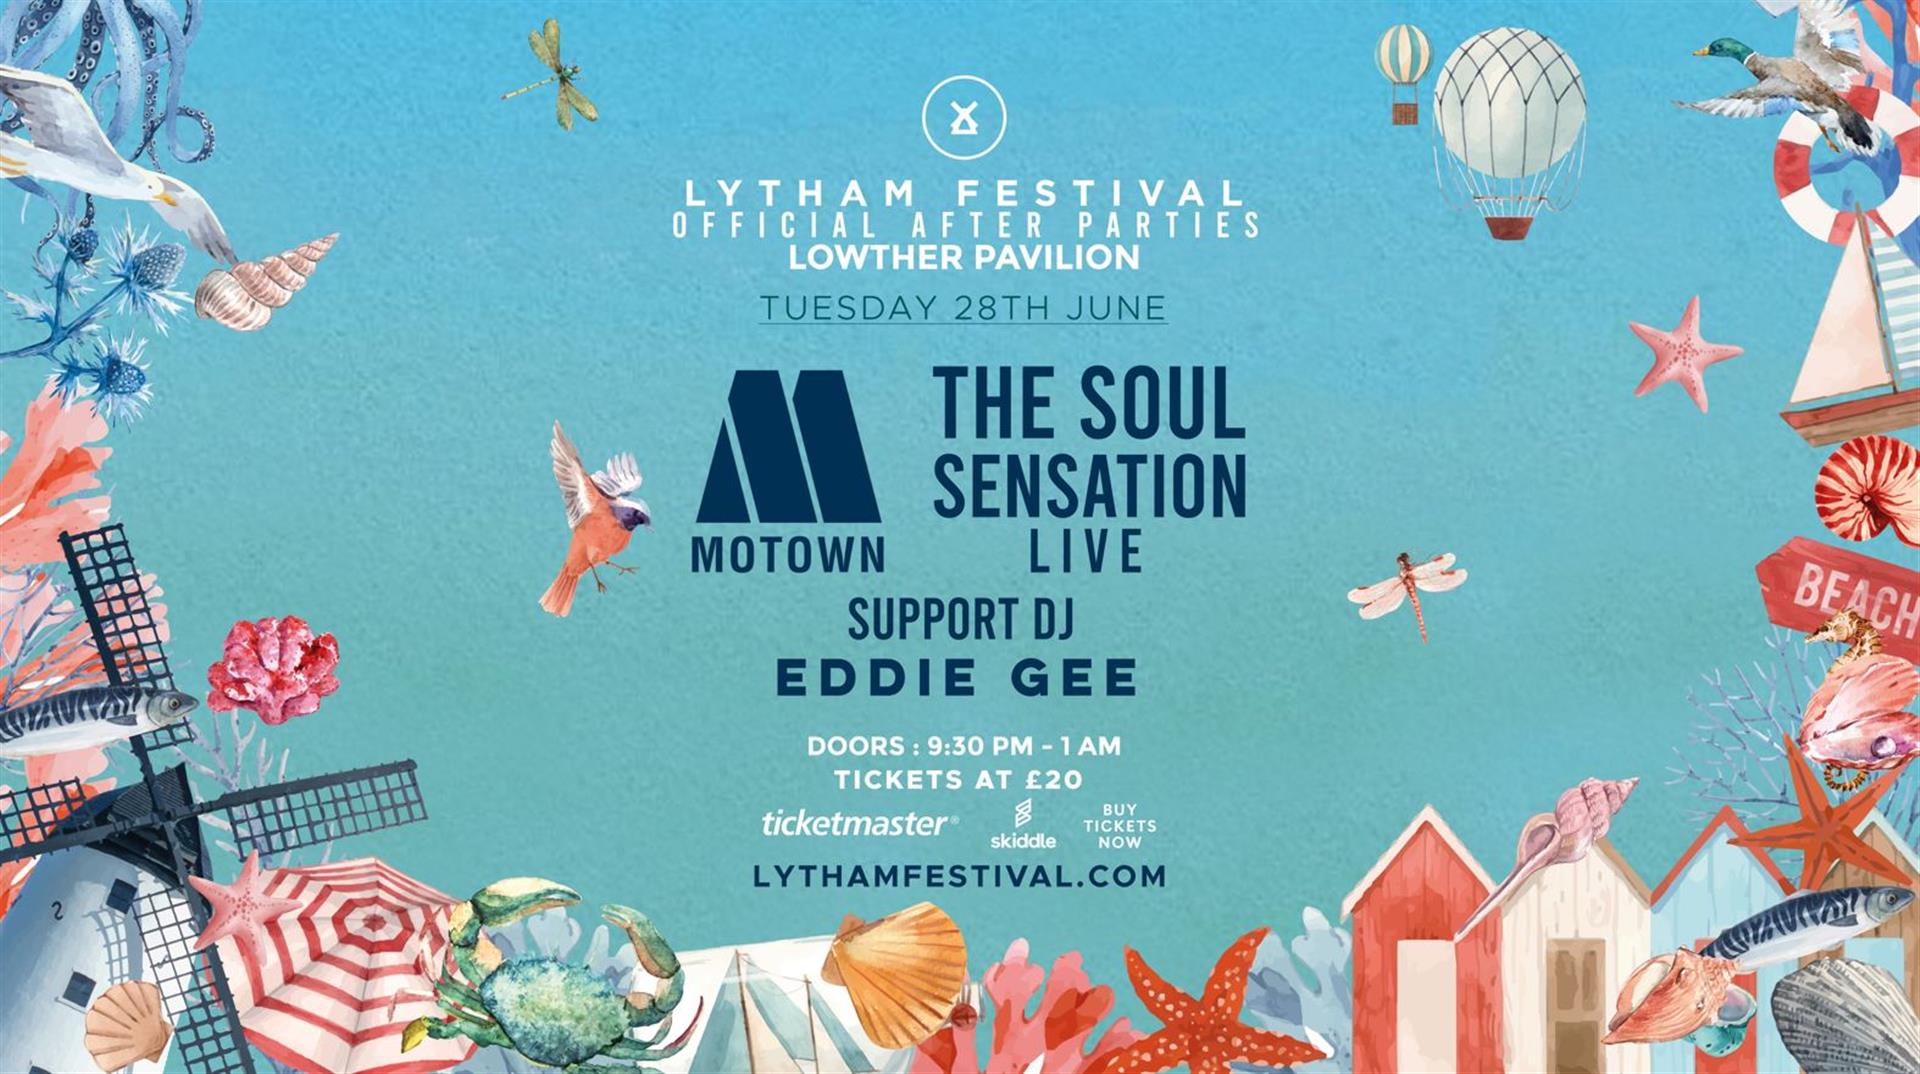 Lytham Festival Official After Parties – The Soul Sensation Live - Lowther Pavilion